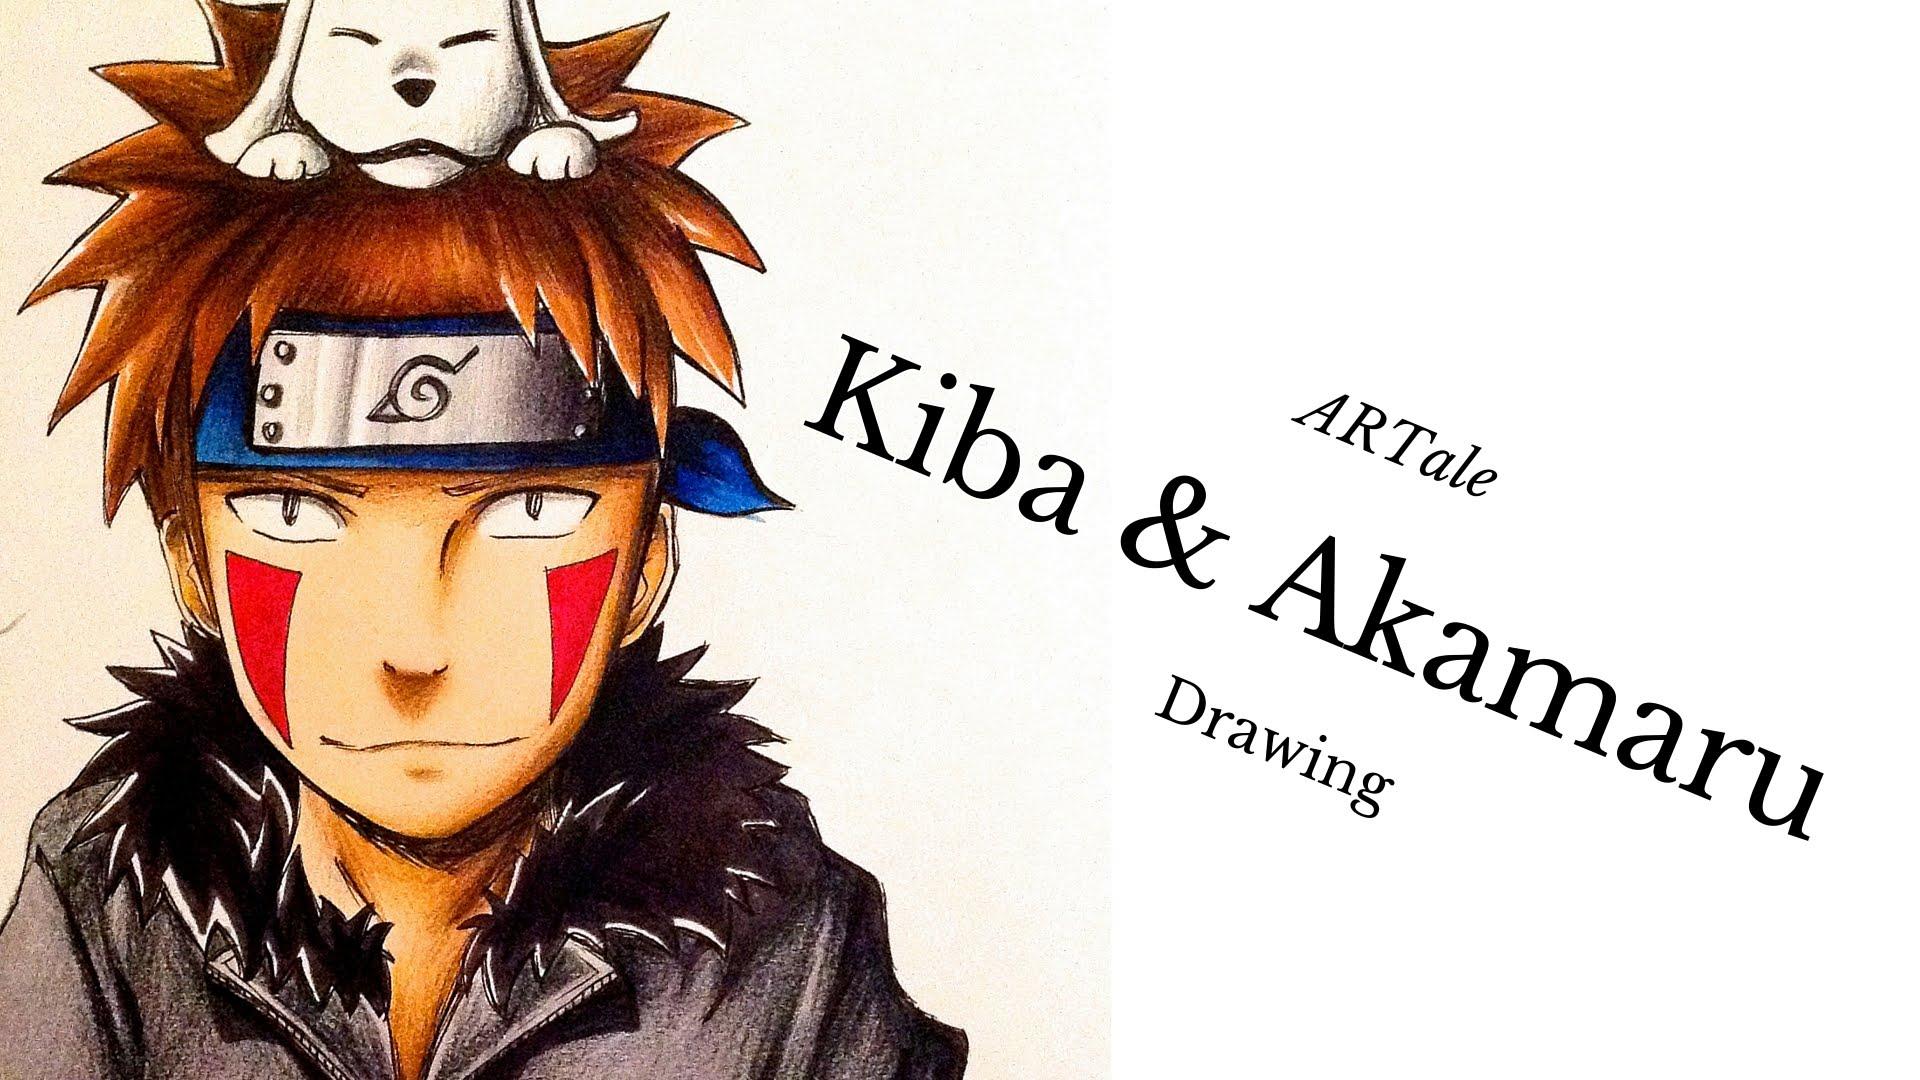 Kiba and Akamaru Drawing